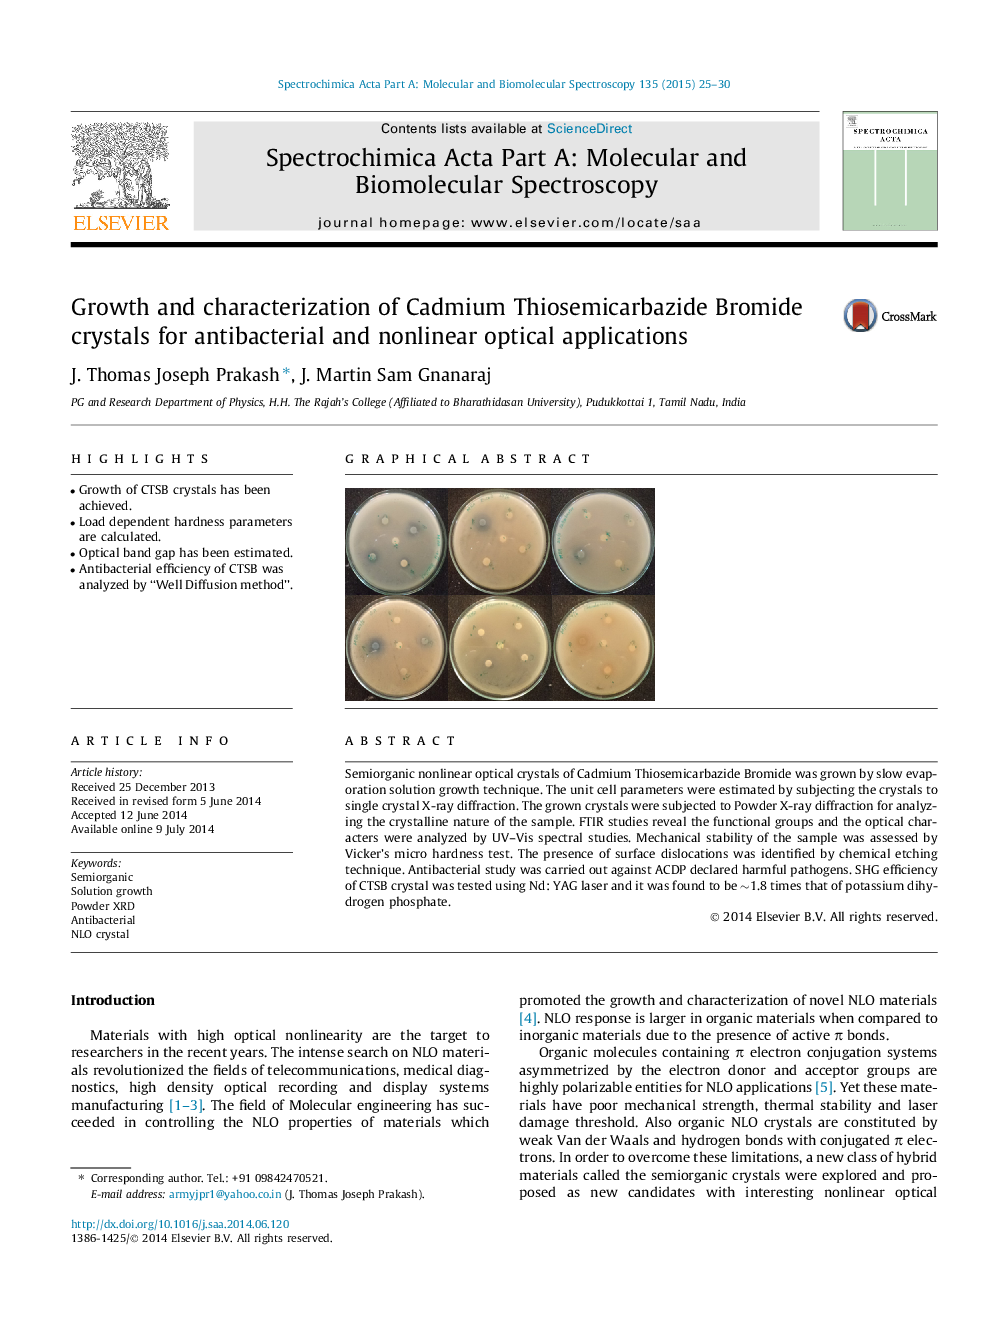 رشد و ویژگی کریستال های کادمیوم تیزیمیکربازید برمید برای کاربردهای اپتیکی ضد باکتری و غیر خطی 